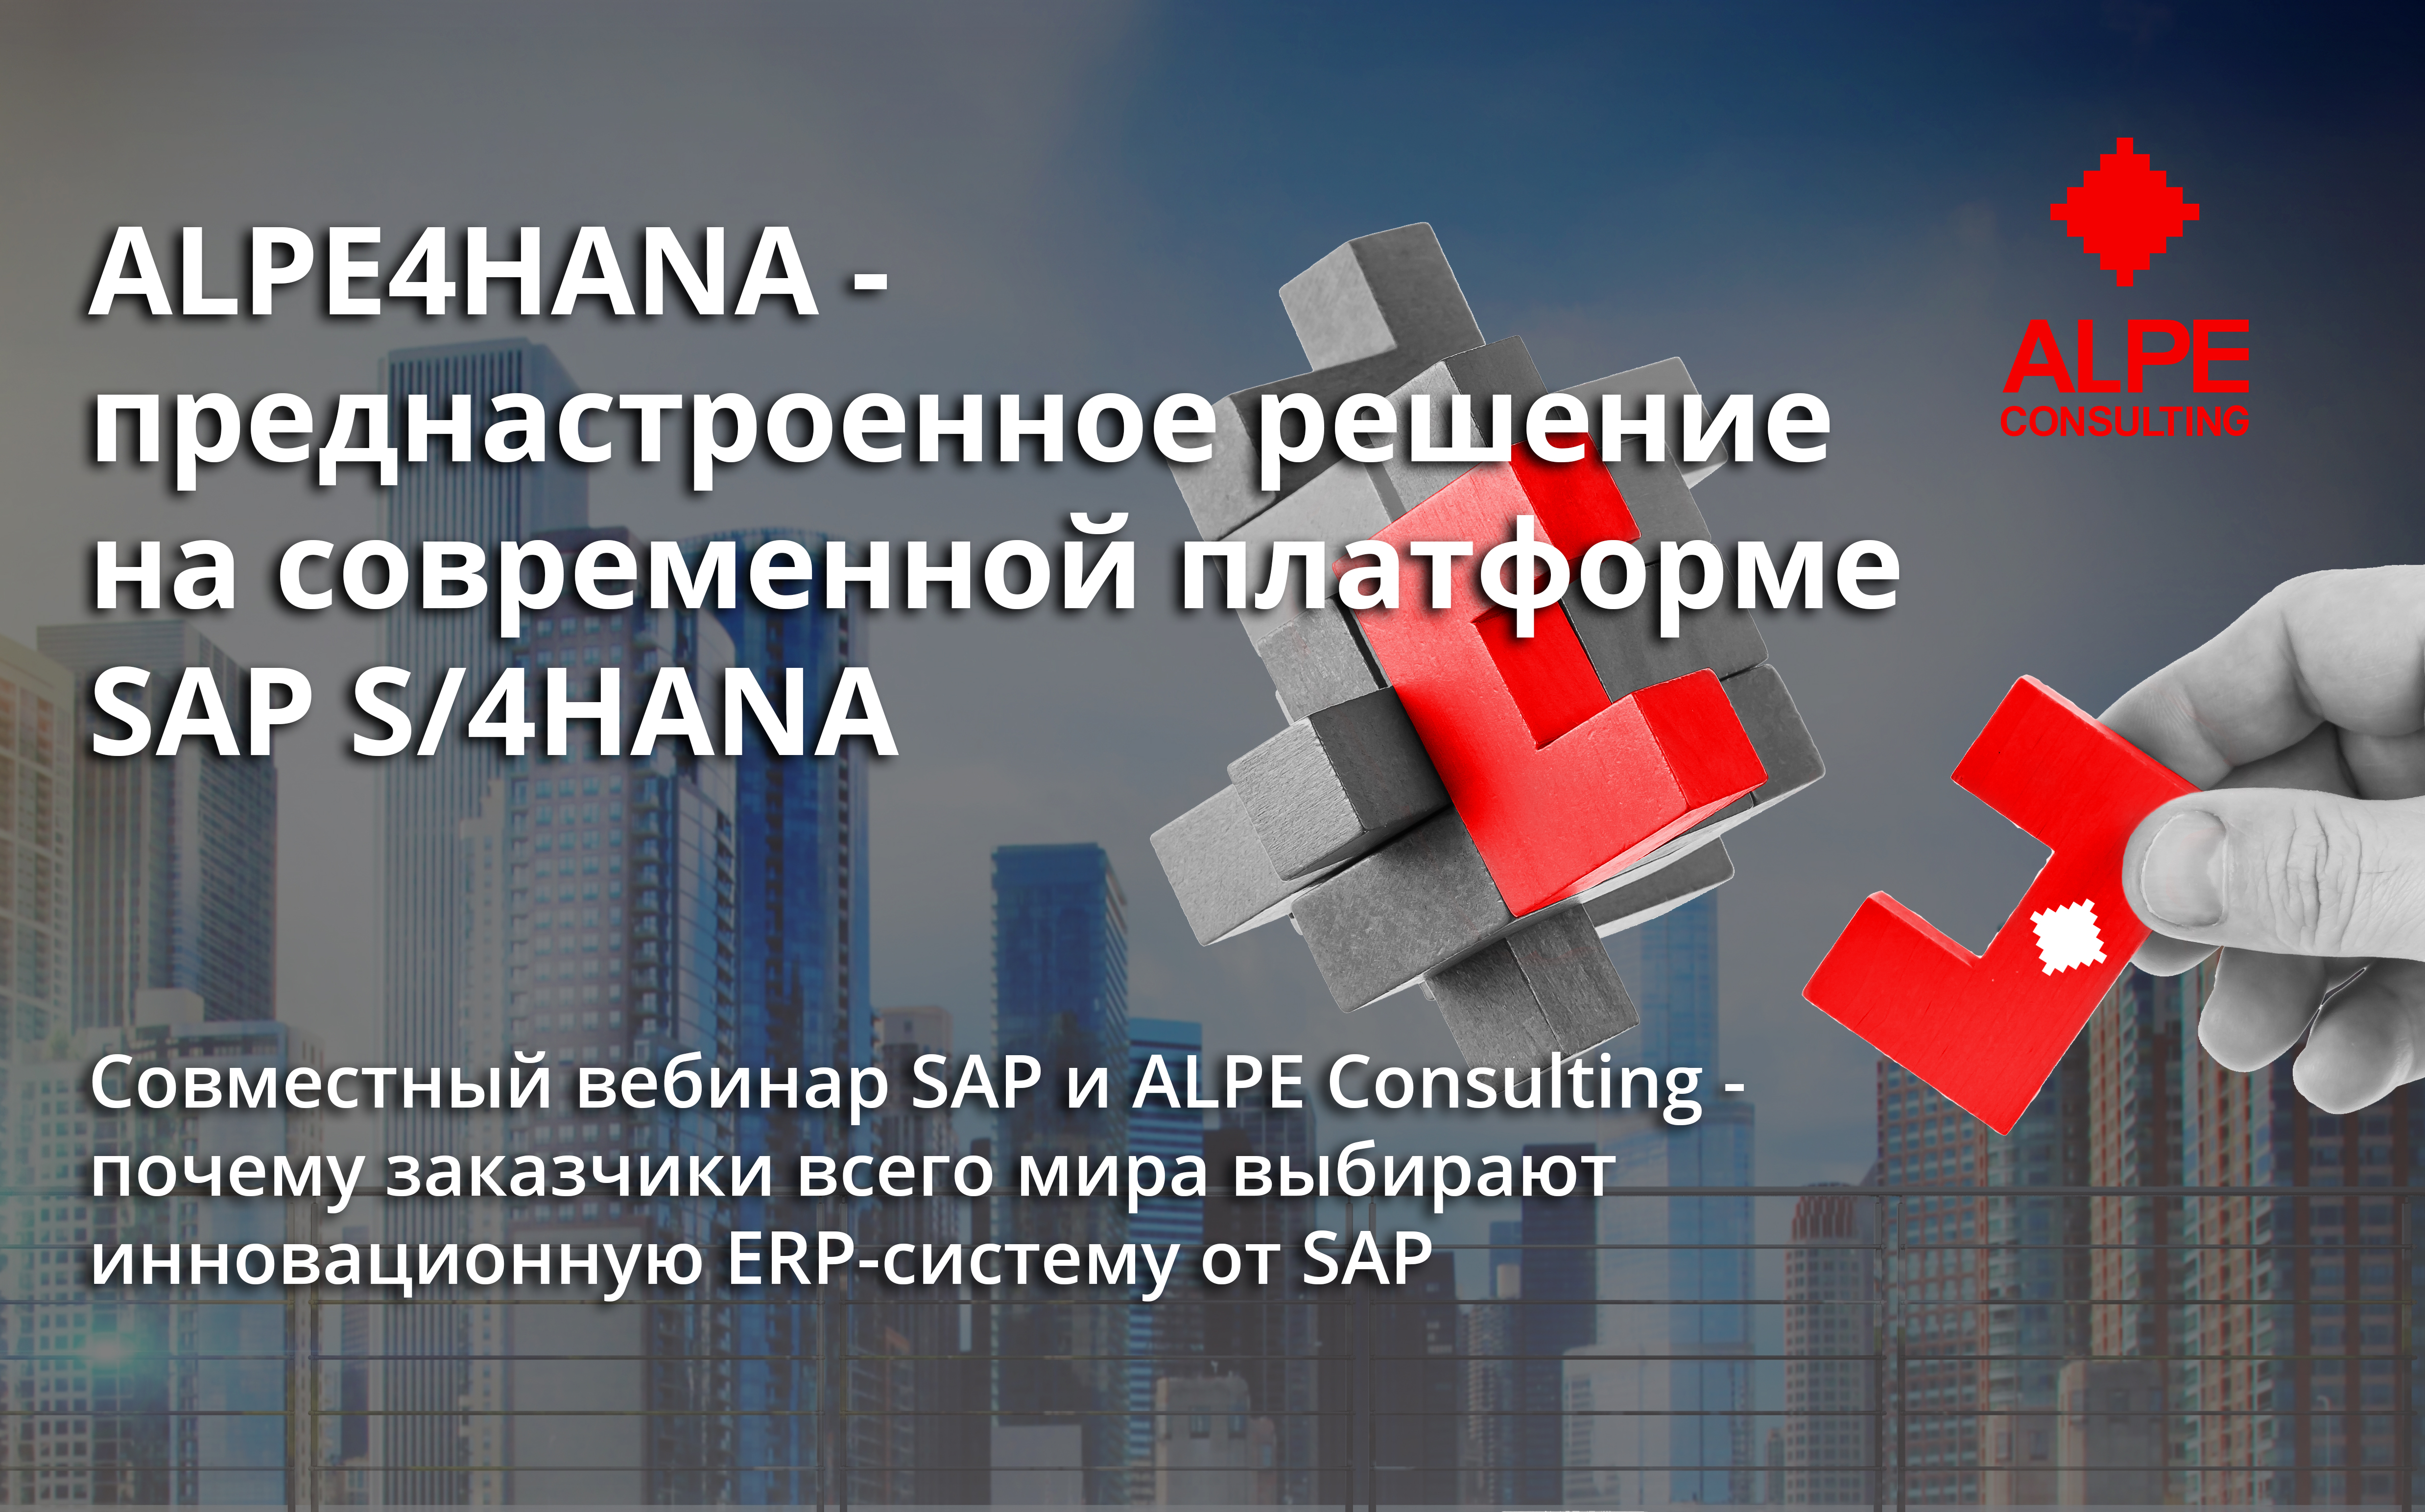 13 мая состоится совместный вебинар SAP и ALPE consulting о преднастроенном решении ALPE4HANA!